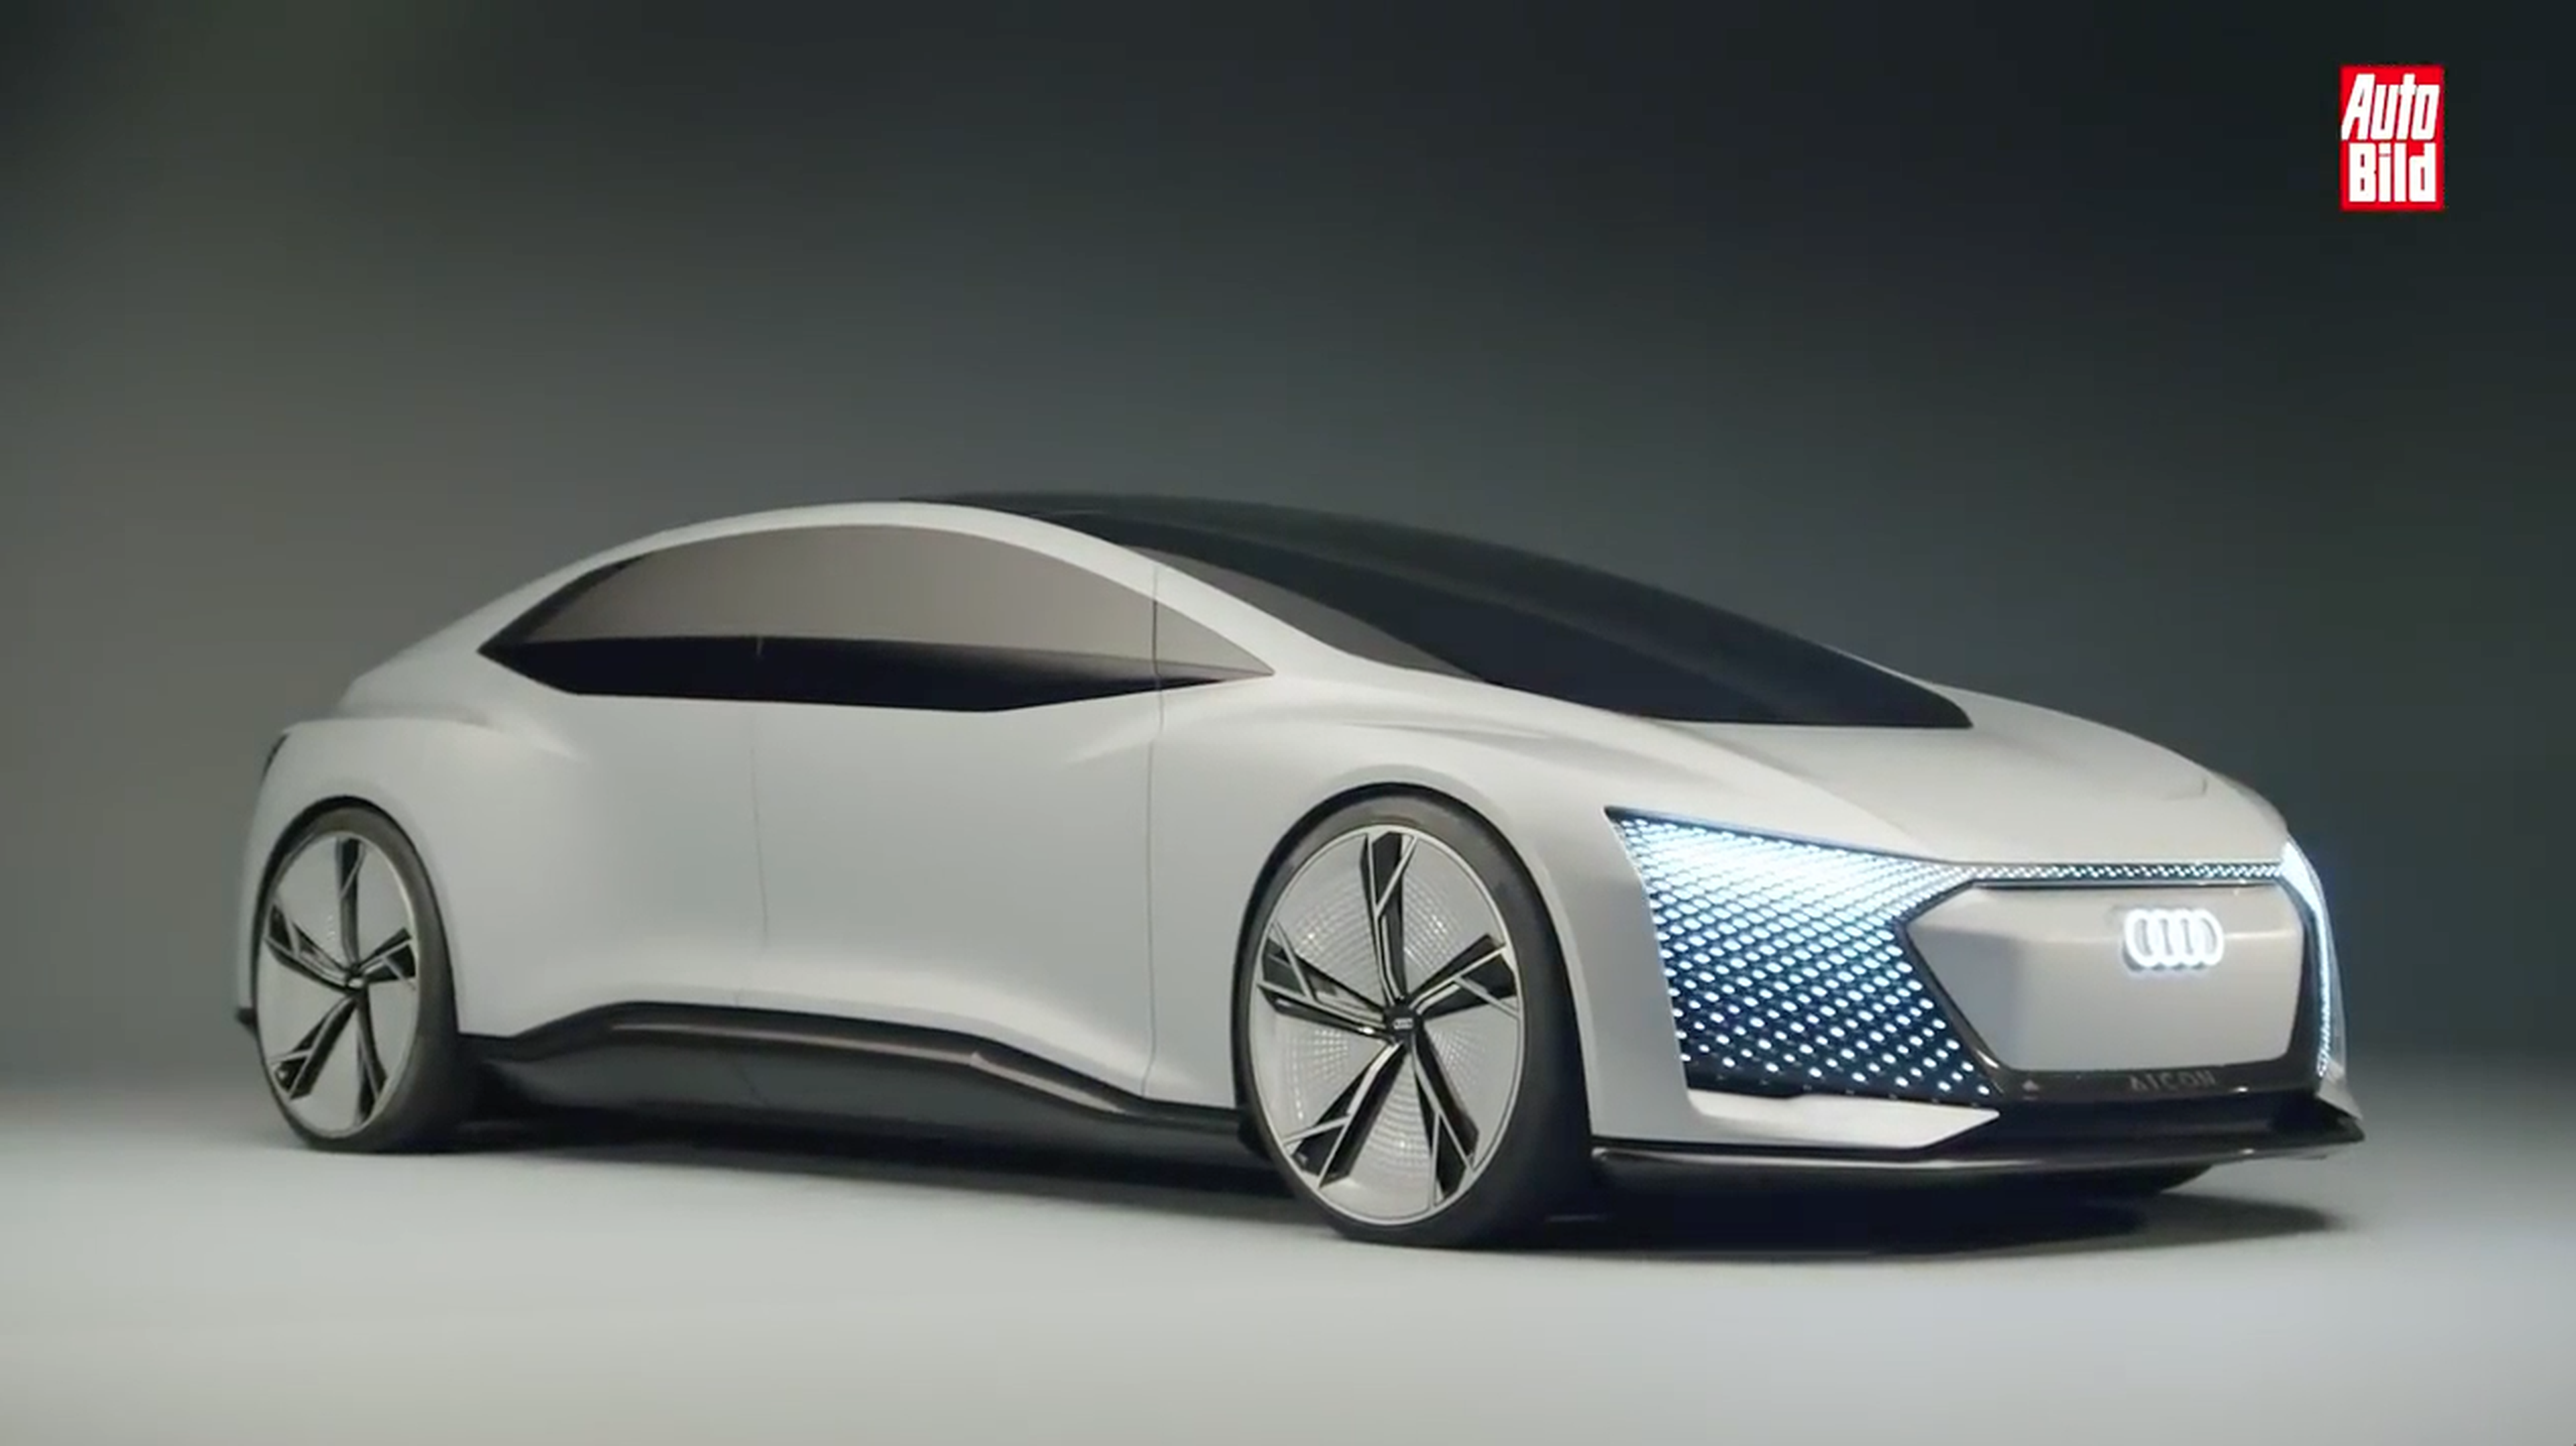 VÍDEO: Audi Aicon, ¿es realmente algo tan especial?